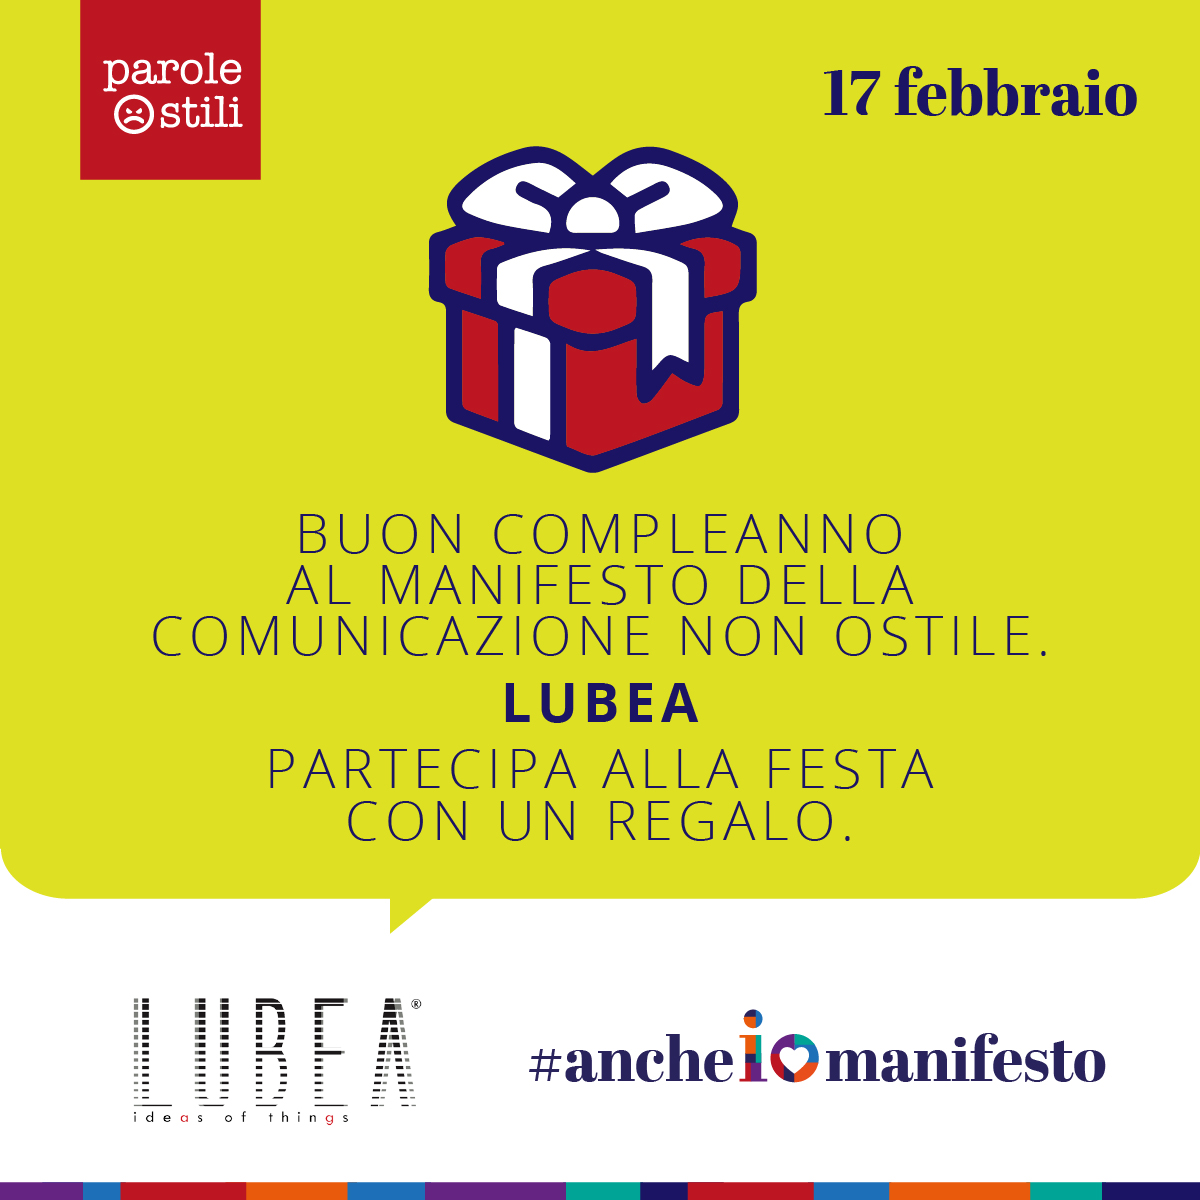 LUBEA festeggia il compleanno di Parole_O_Stili il 17 Febbraio 2021 – #ancheiomanifesto